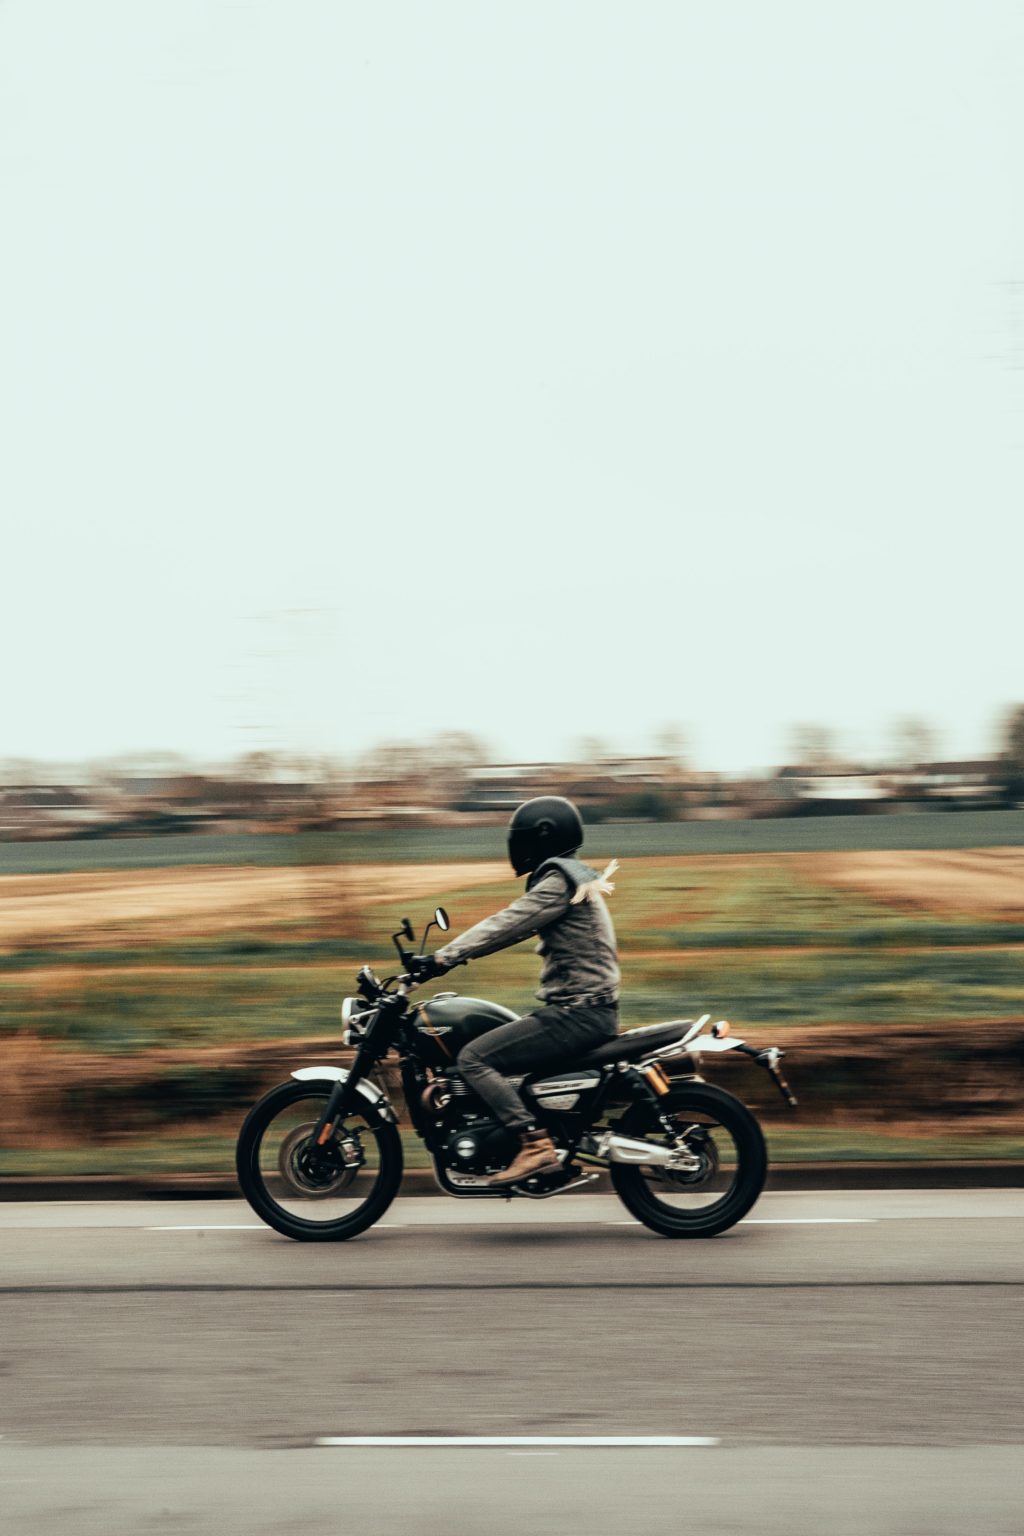 motorcycle trip planner nz